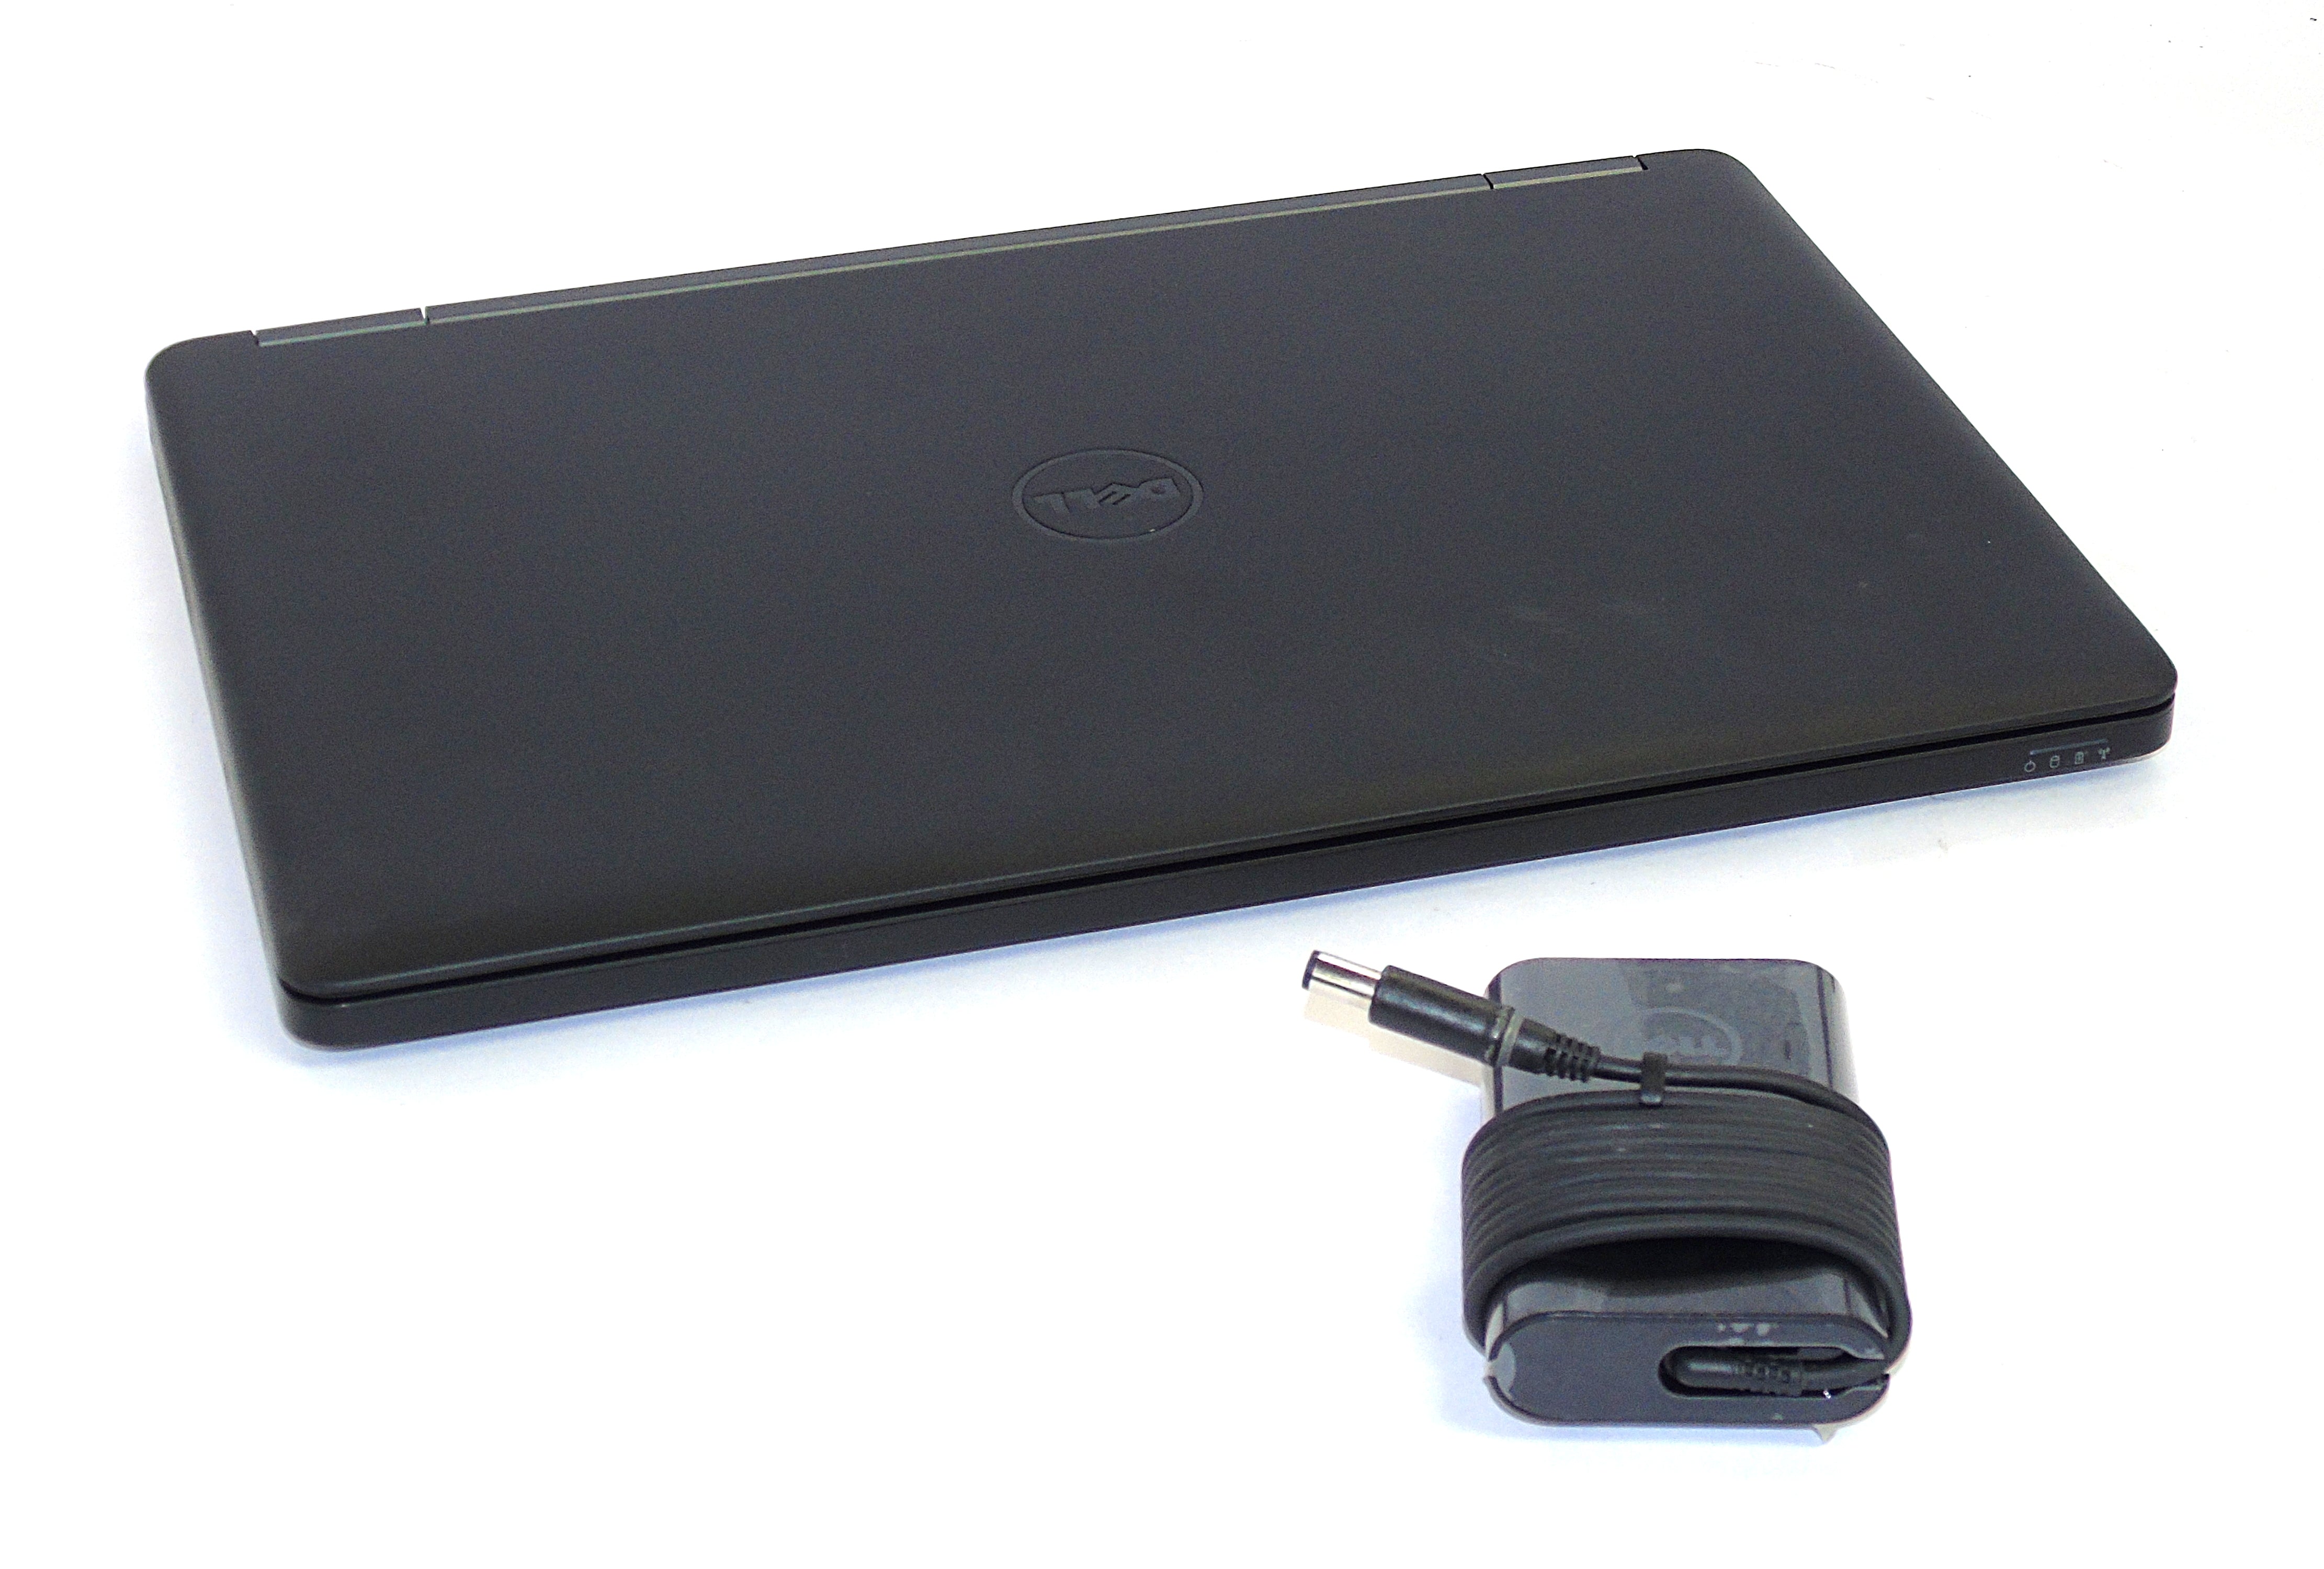 Dell Latitude E5550 Laptop, 15.6" i5 5th Gen, 8GB RAM, 240GB SSD